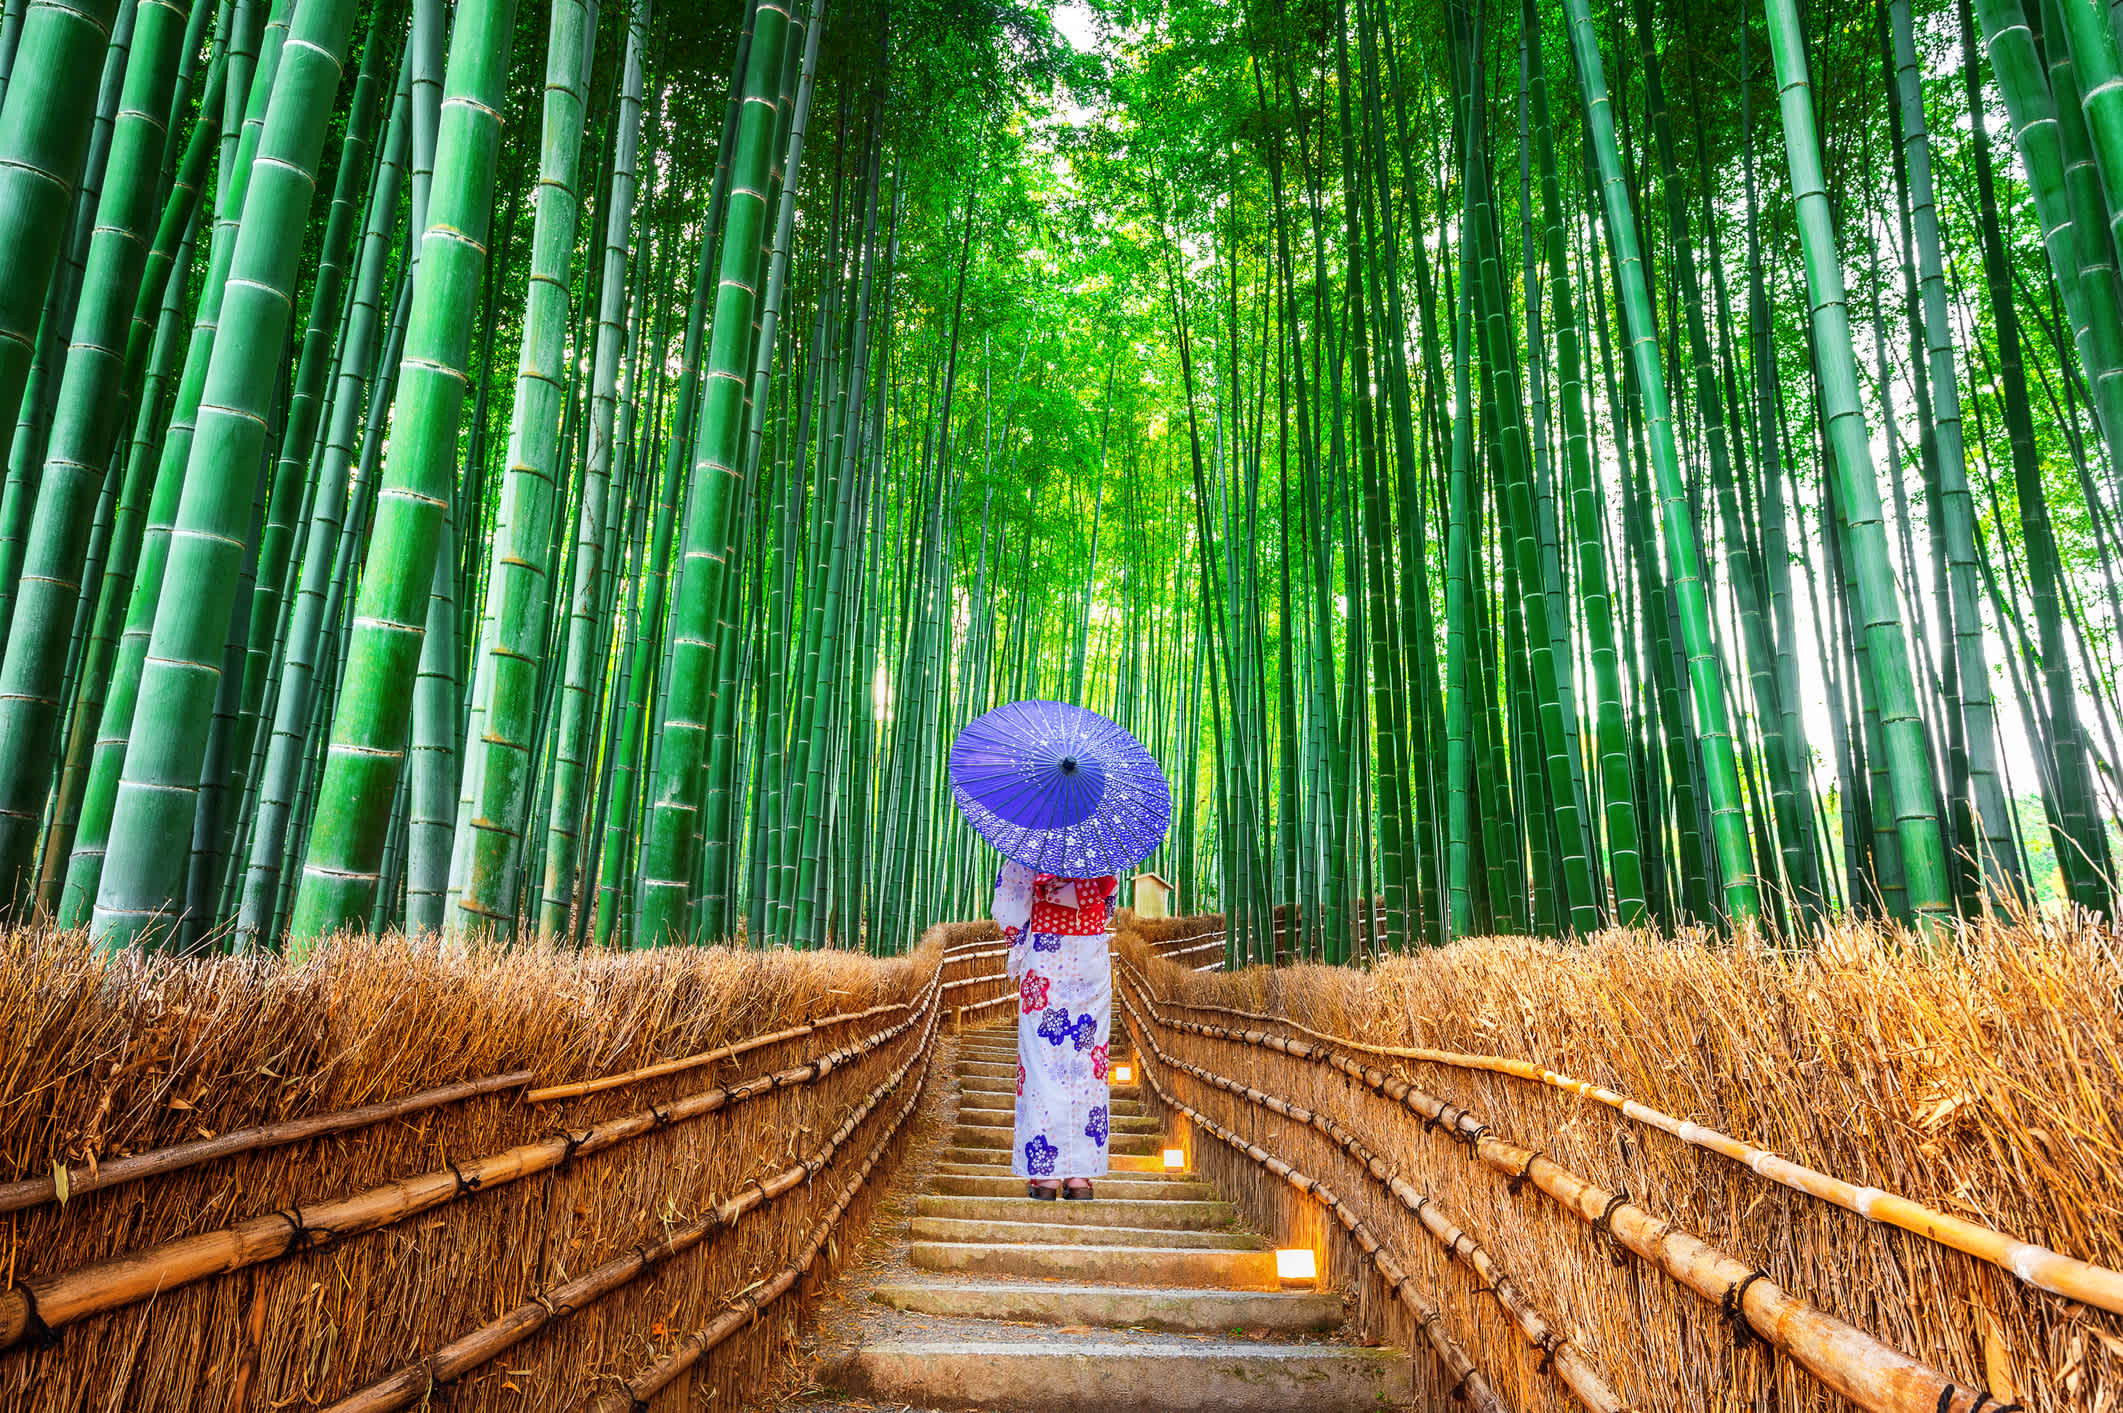 Une femme en kimono traditionnel japonais dans une forêt de bambous à Kyoto, Japon.

